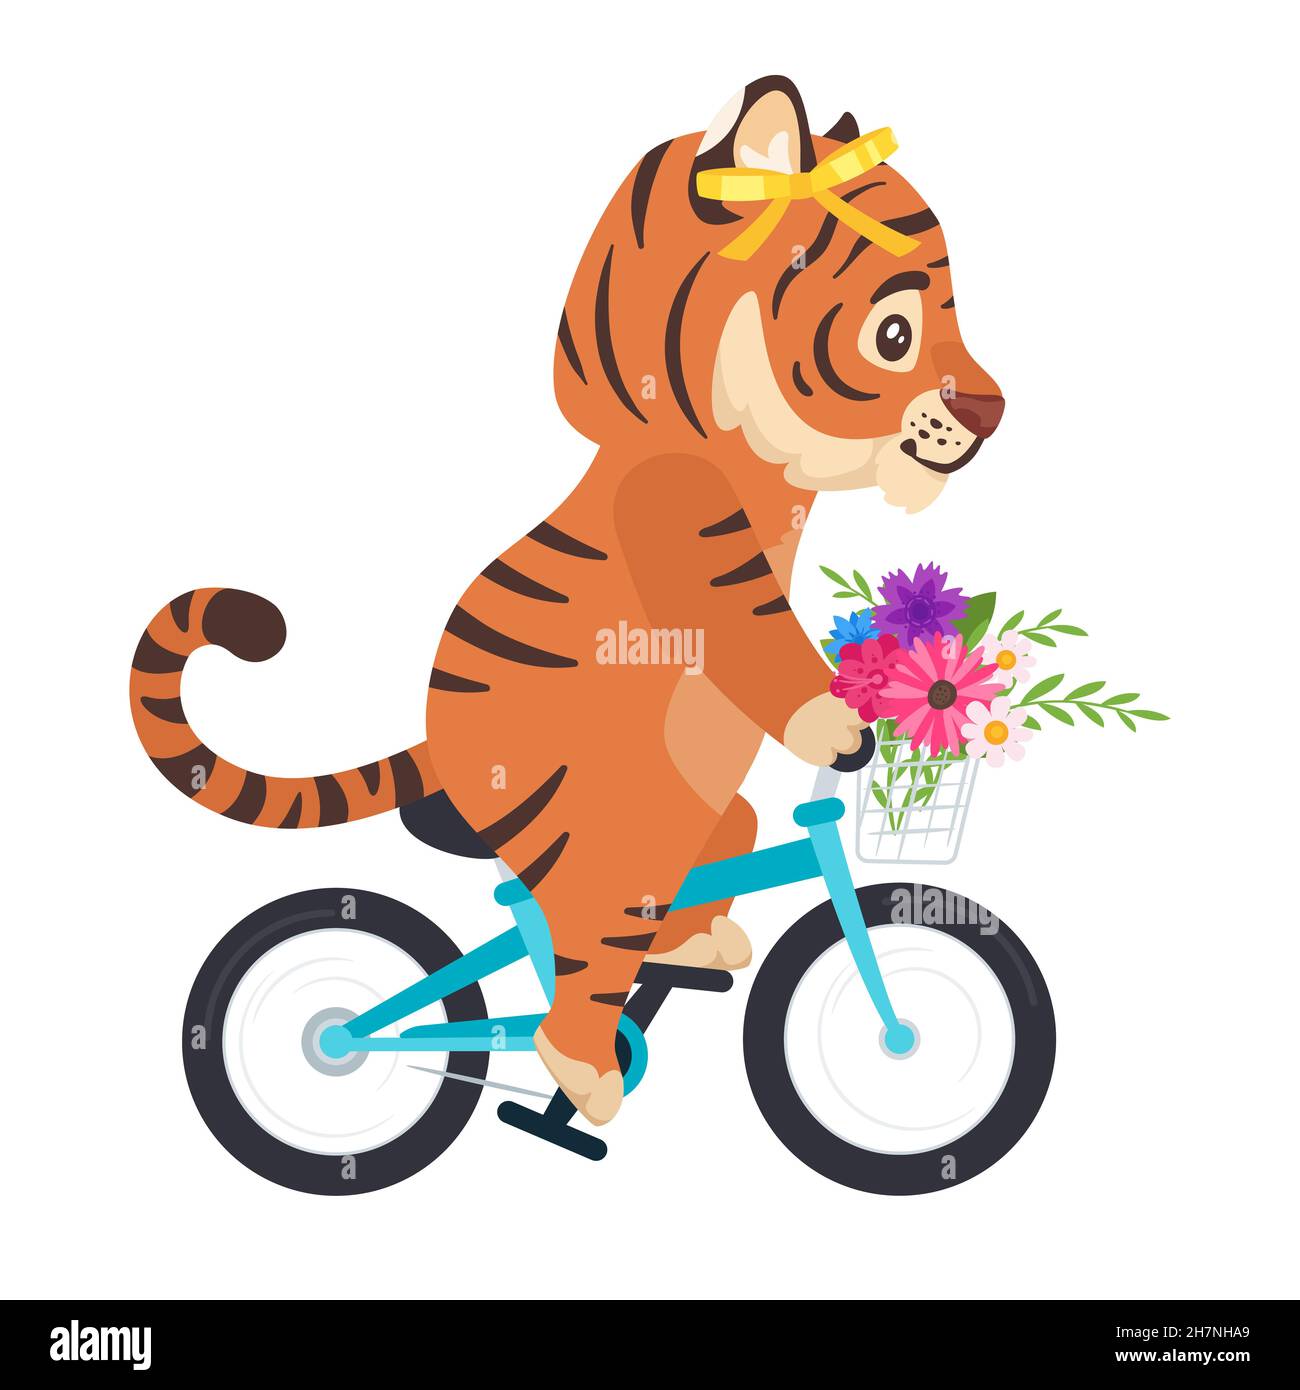 Vector cute cartoon tiger riding a bicycle Stock Vector